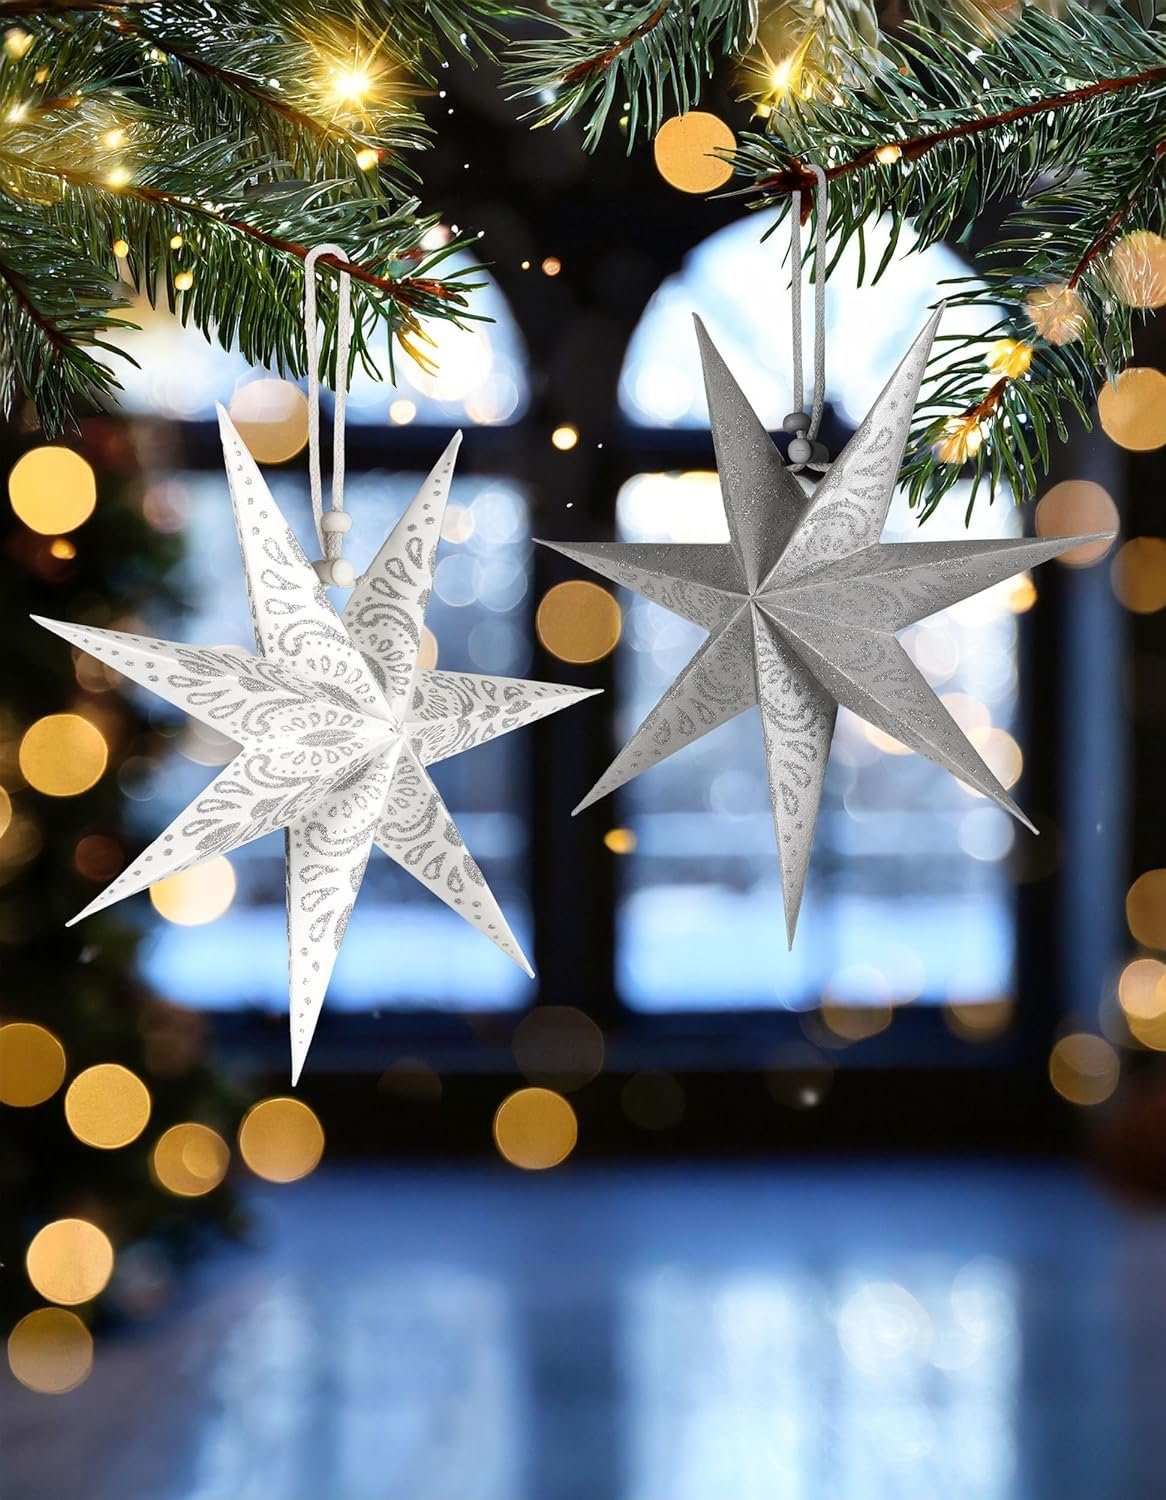 Silber Weihnachten Sterne, Papier Weihnachtsbaum Faltsterne Großer Papiersterne 6 Christbaumschmuck für cm 20 Fenster - und - BRUBAKER Weihnachtssterne Dekoration und Weiß